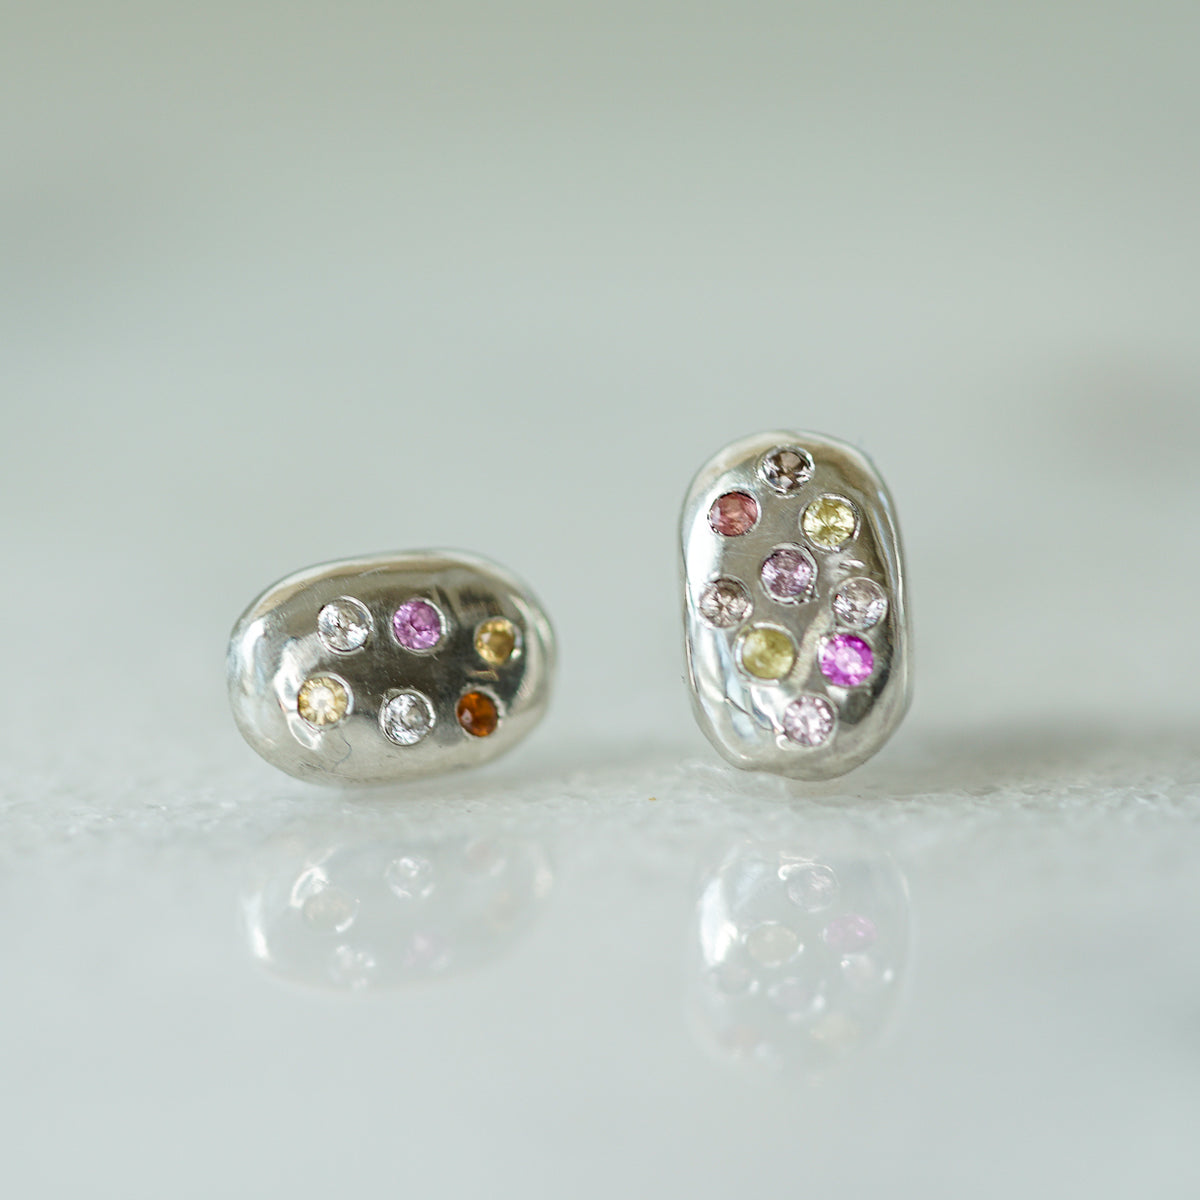 Starburst rain drop II earrings with sapphires